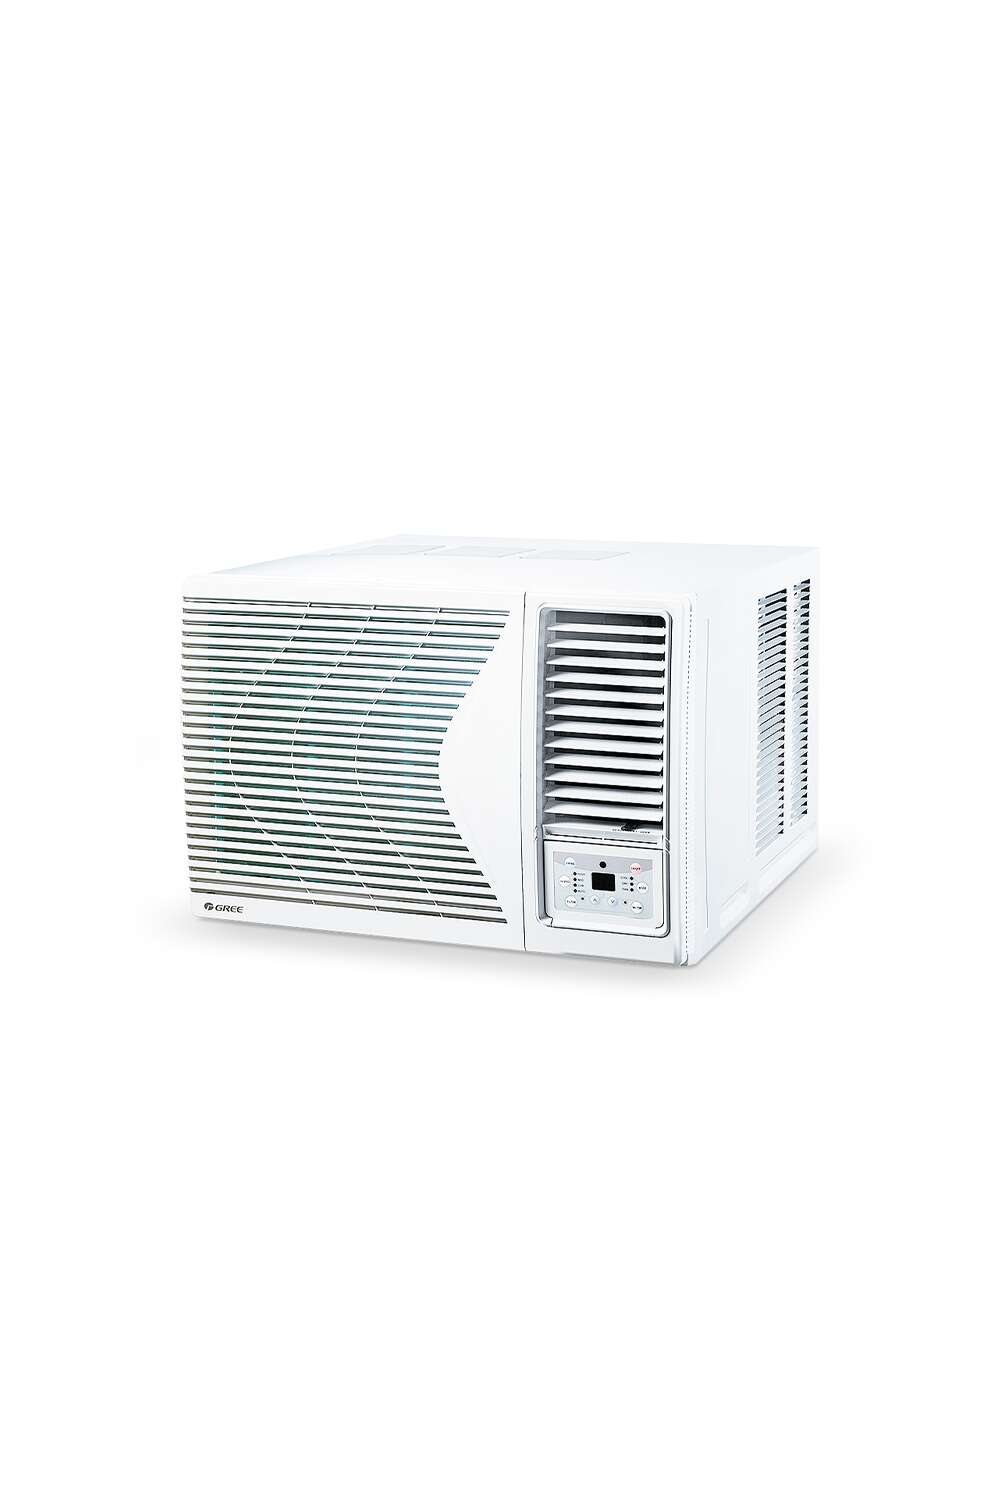 Gree electric appliances inc. gree ablakklíma (csak hűtő) - 2.7 kw